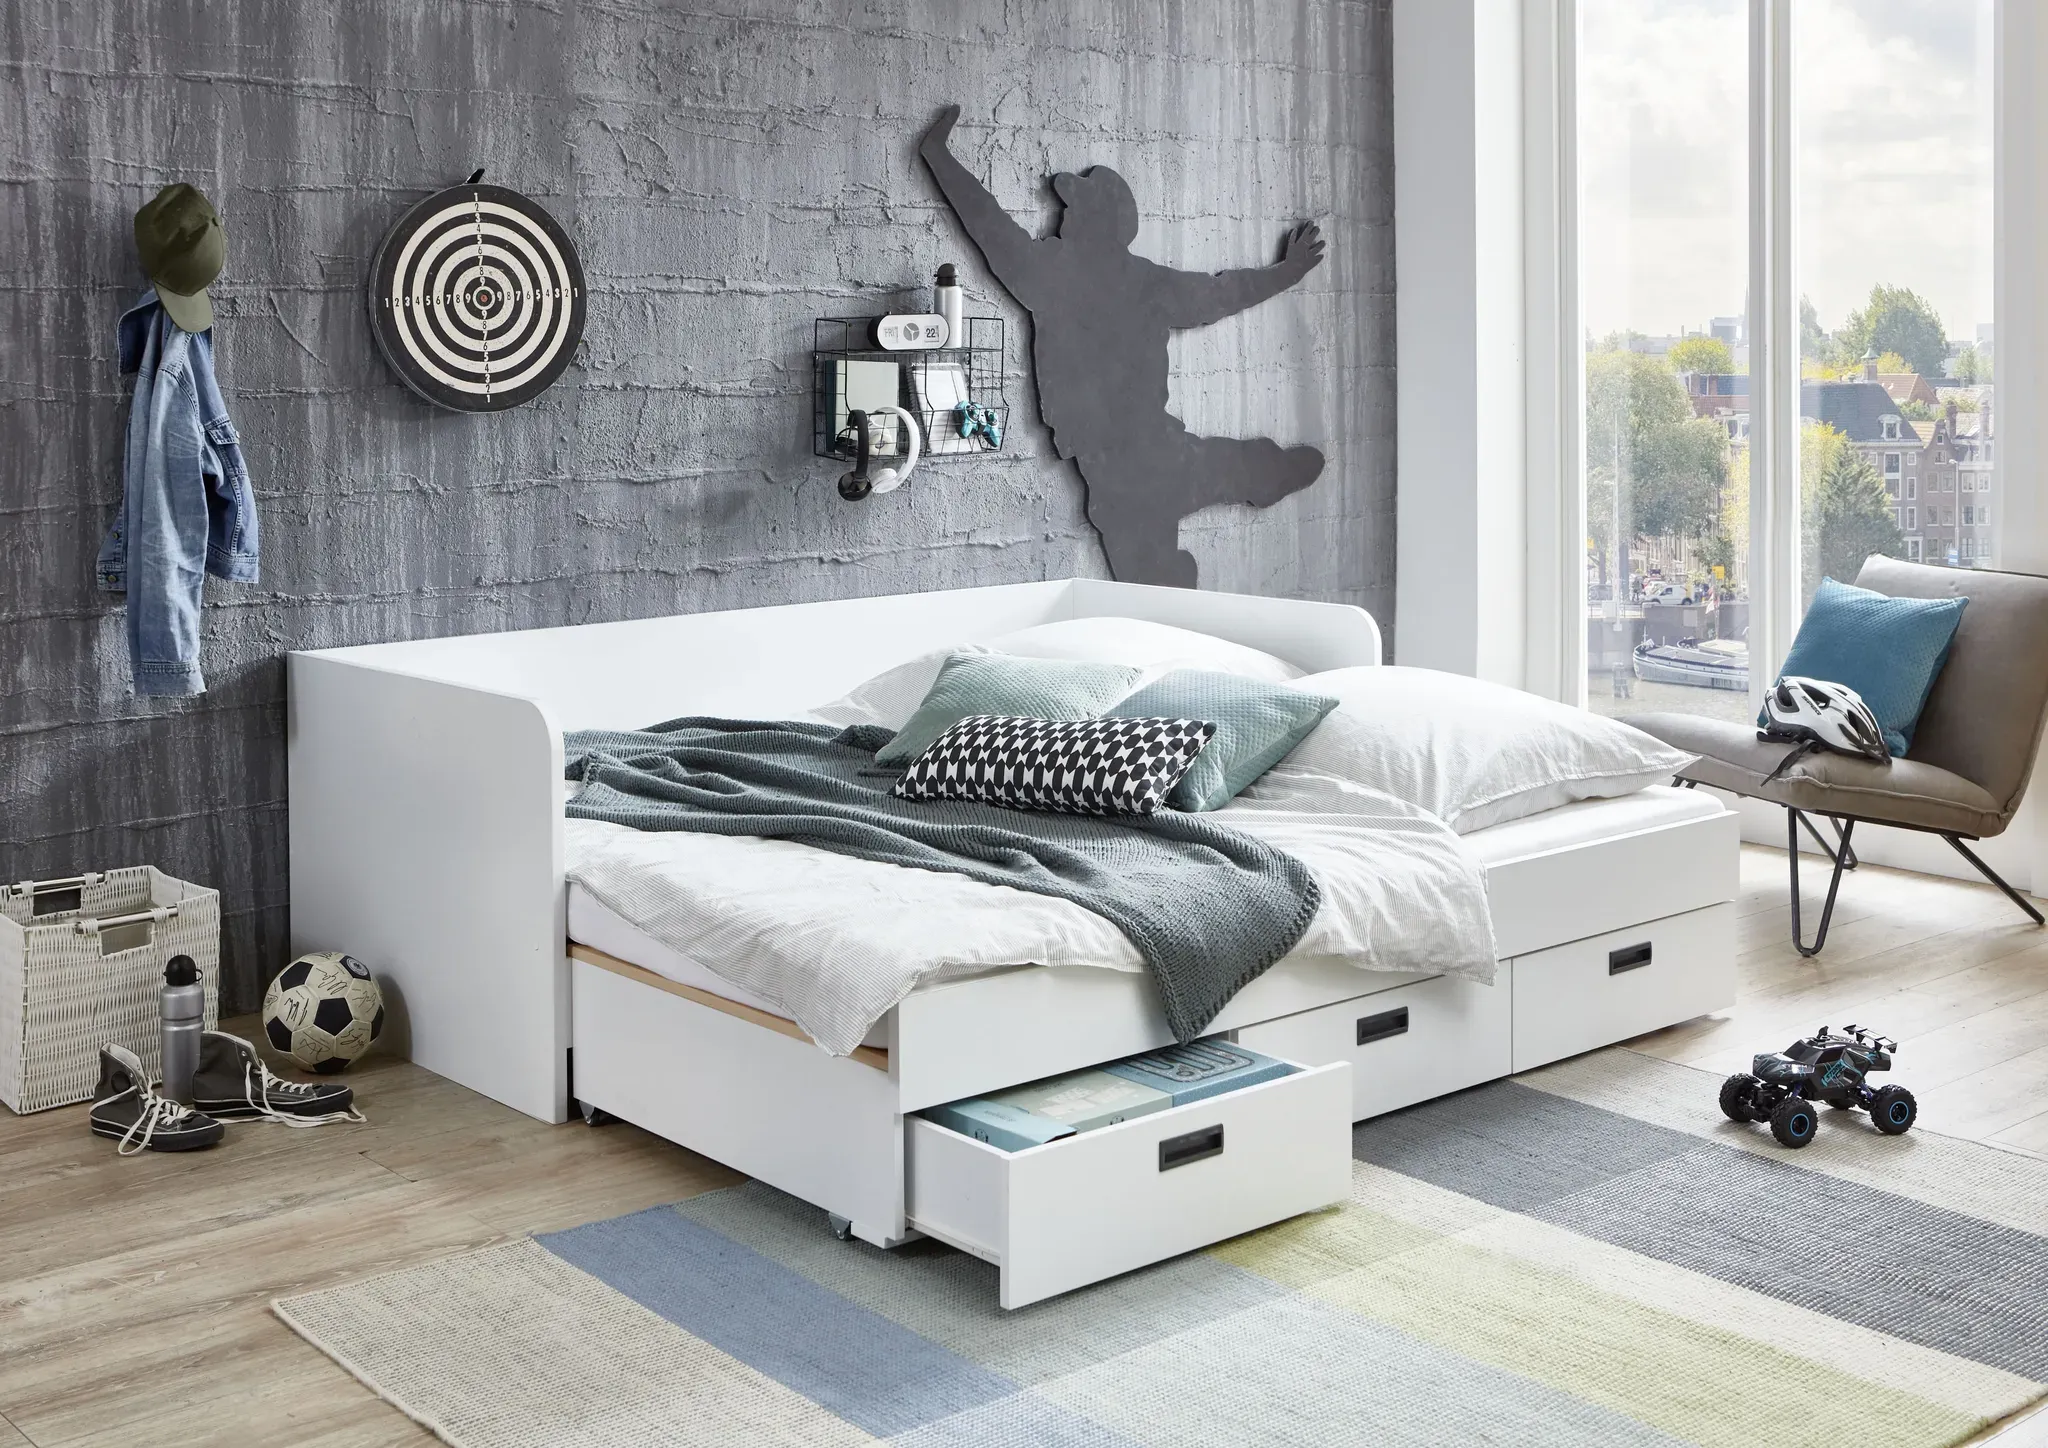 Relita Einzelbett, ausziehbar auf 180x200 cm, 3 Schubladen, mit Lattenrost, 2 Farben Relita Weiß Dekor + Weiß Dekor + Weiß Dekor